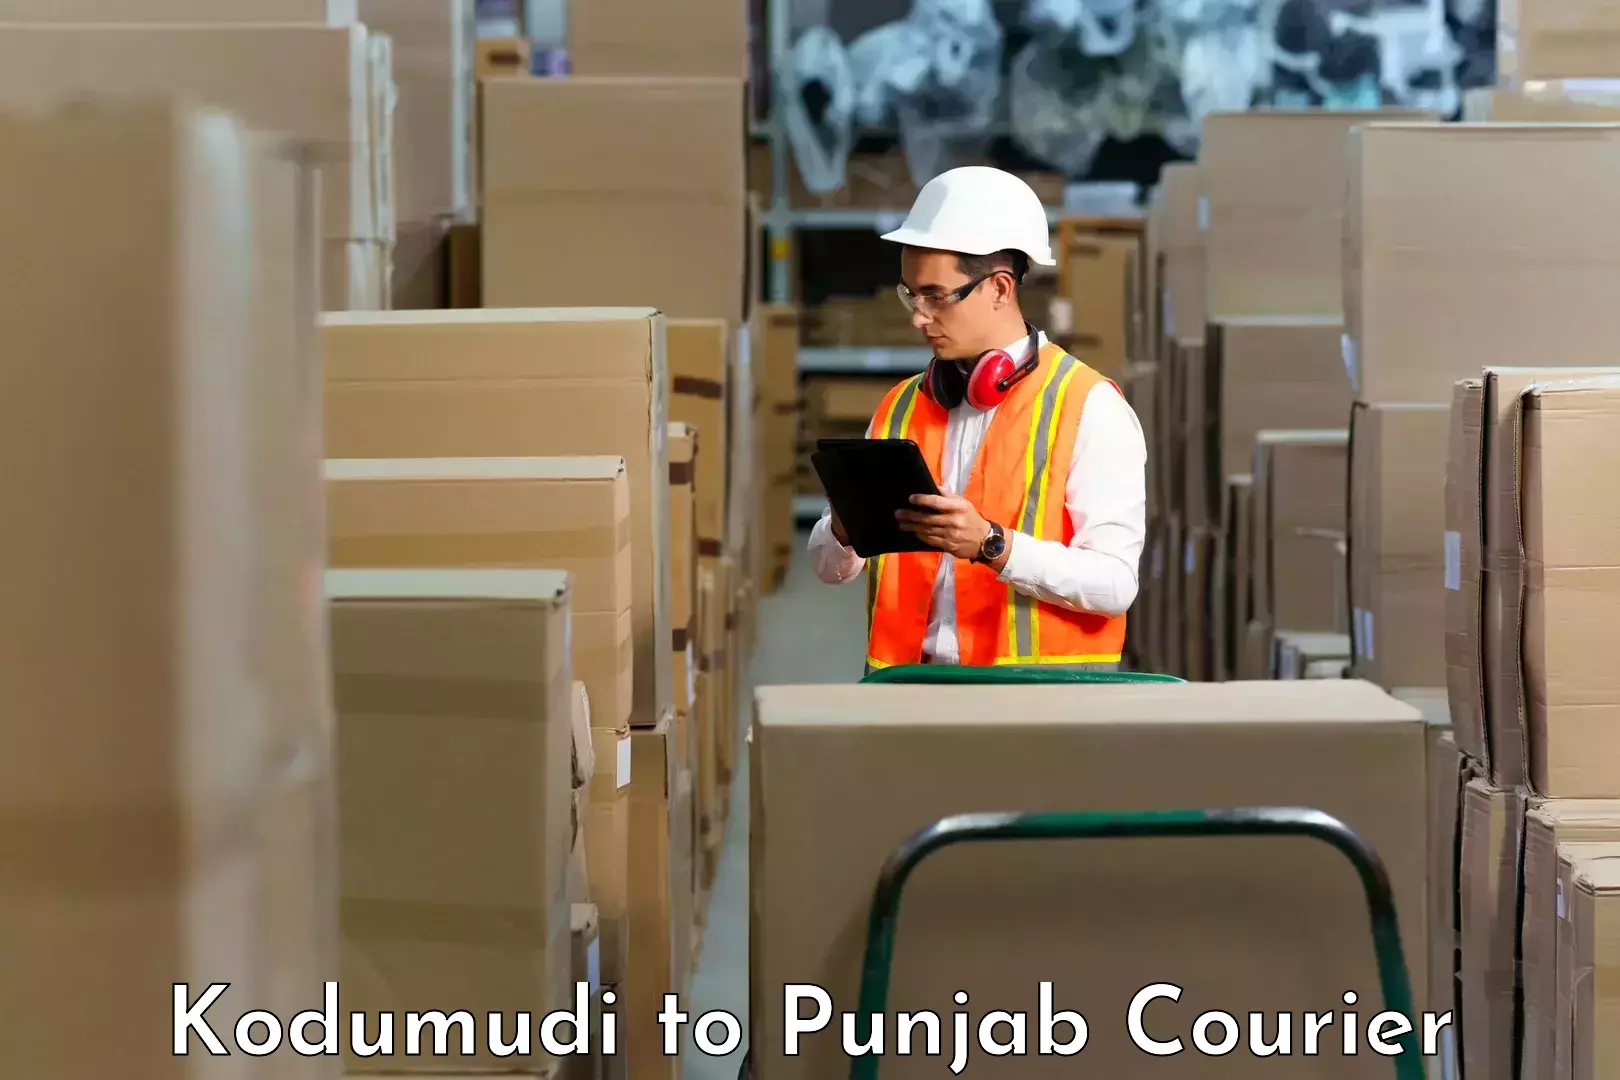 Fast-track shipping solutions Kodumudi to Kotkapura